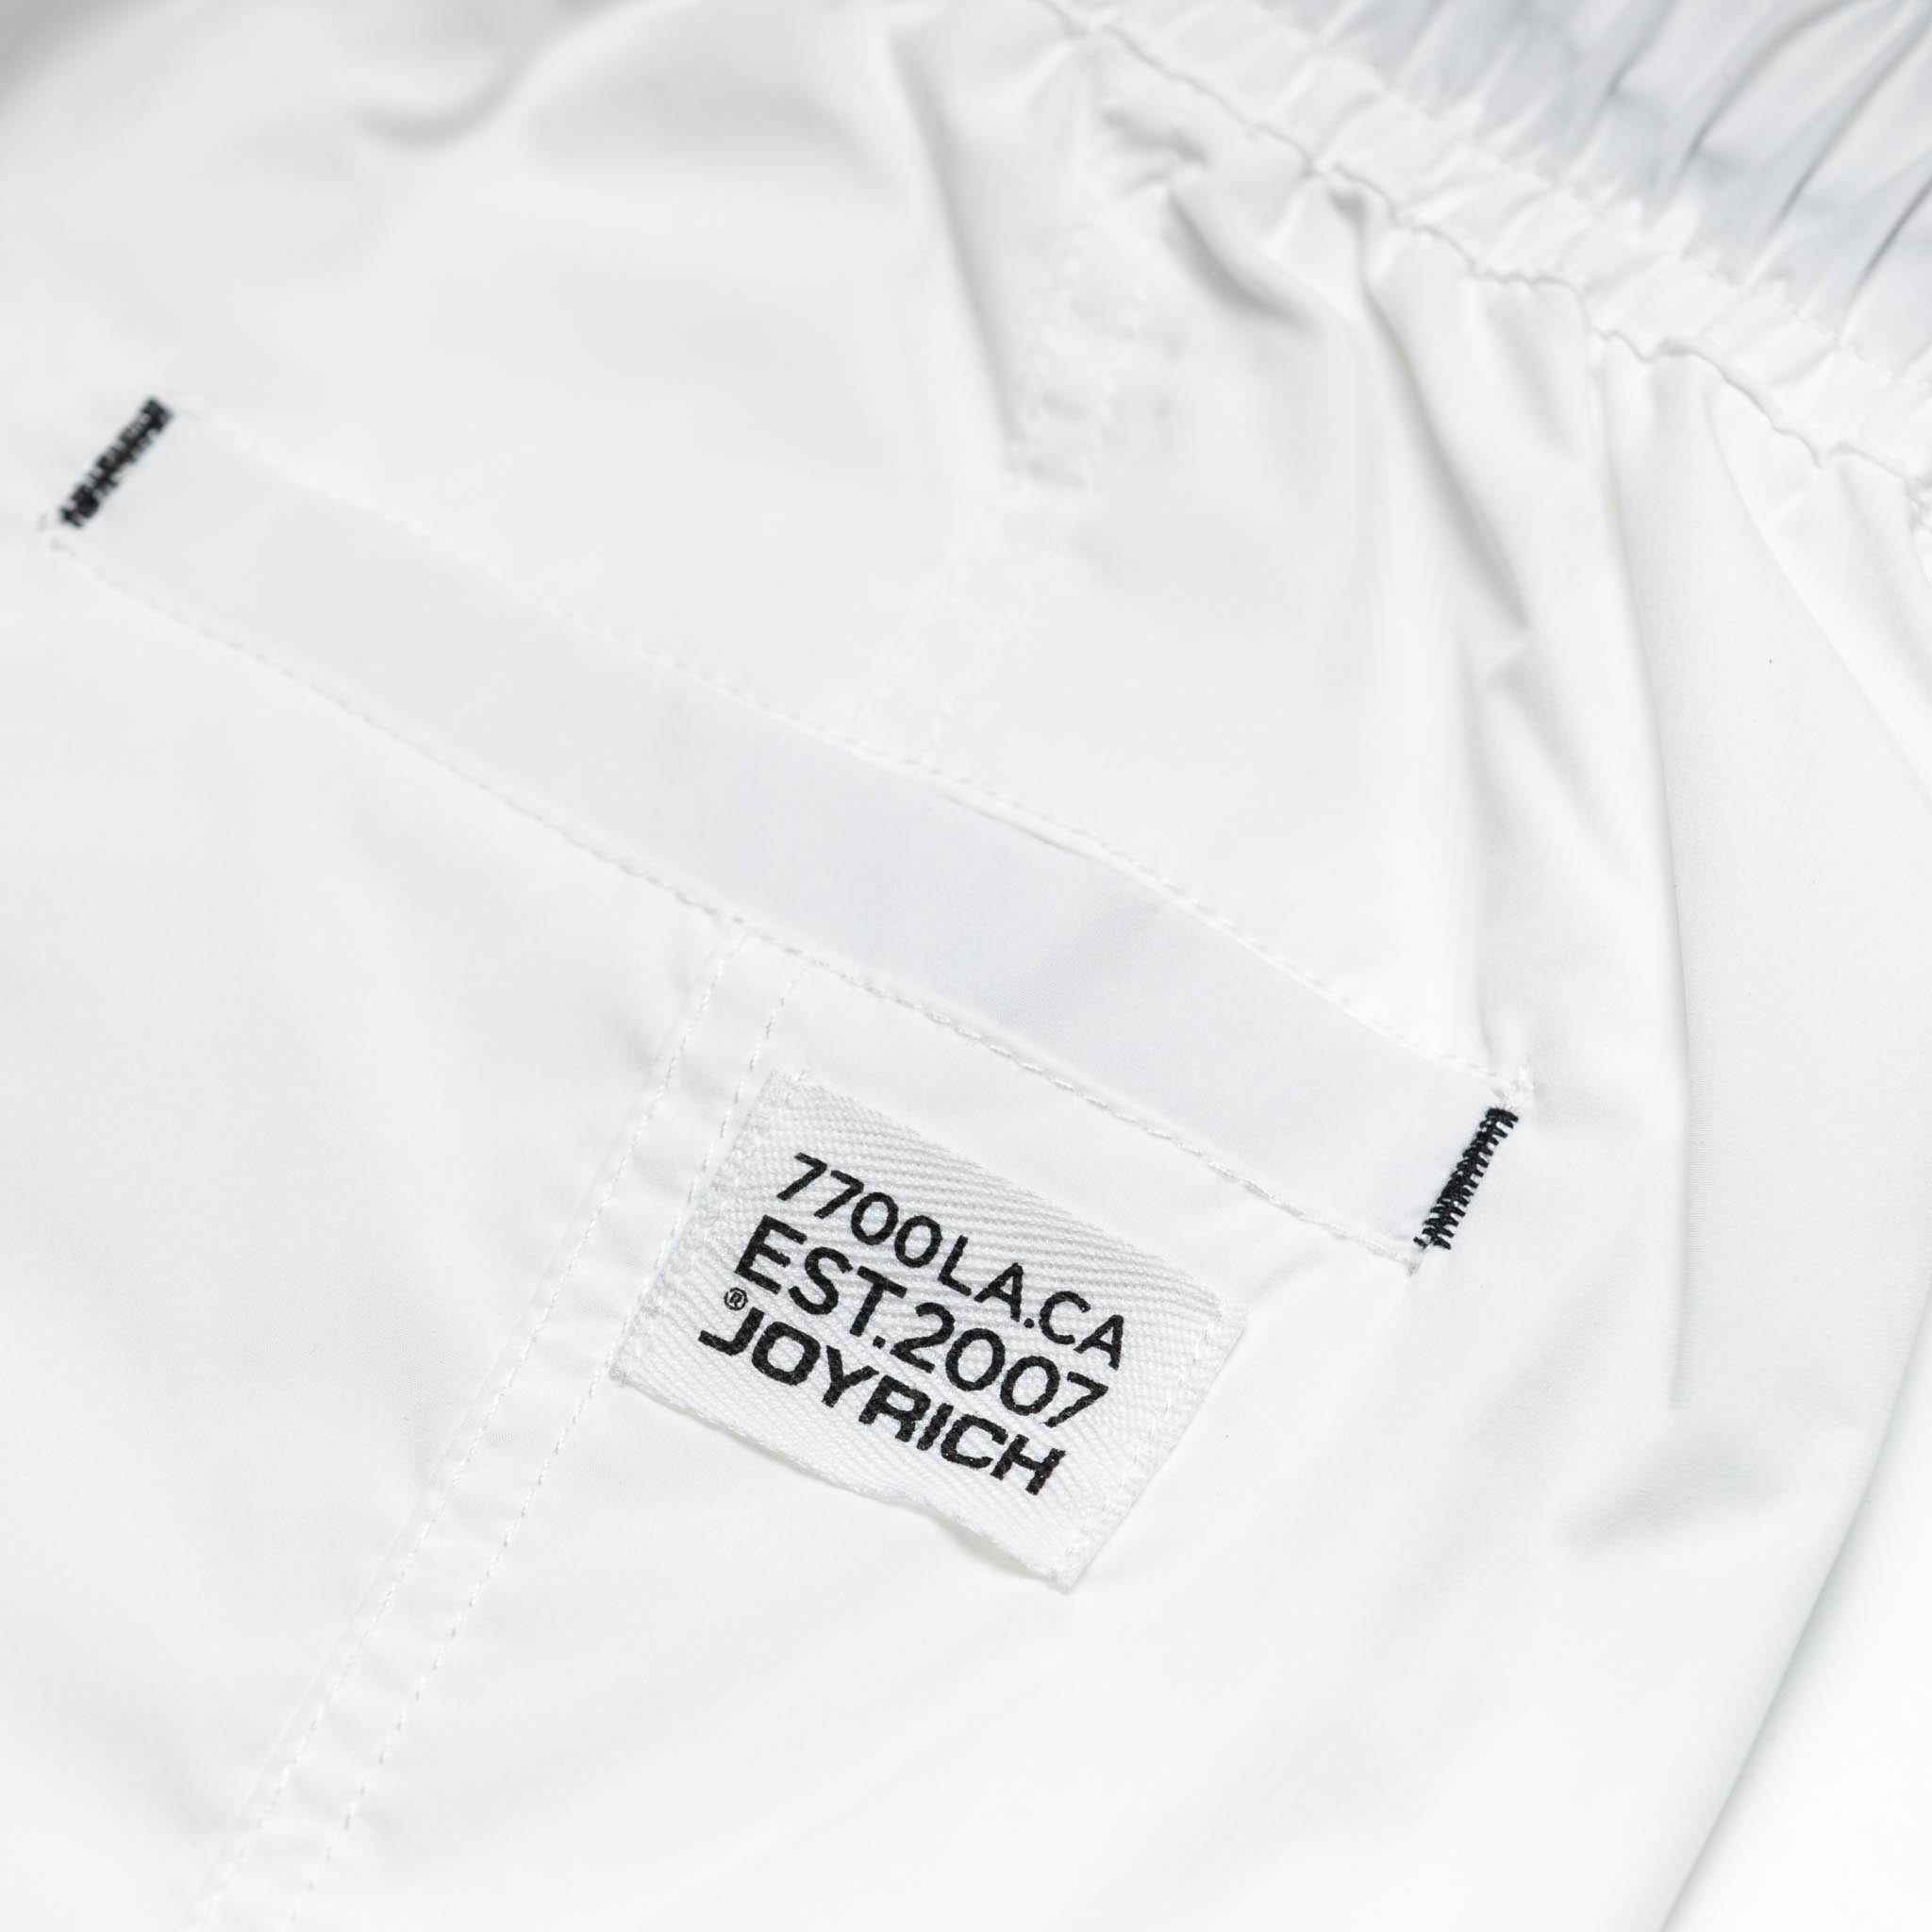 Joyrich Essentials Cargo Pant White